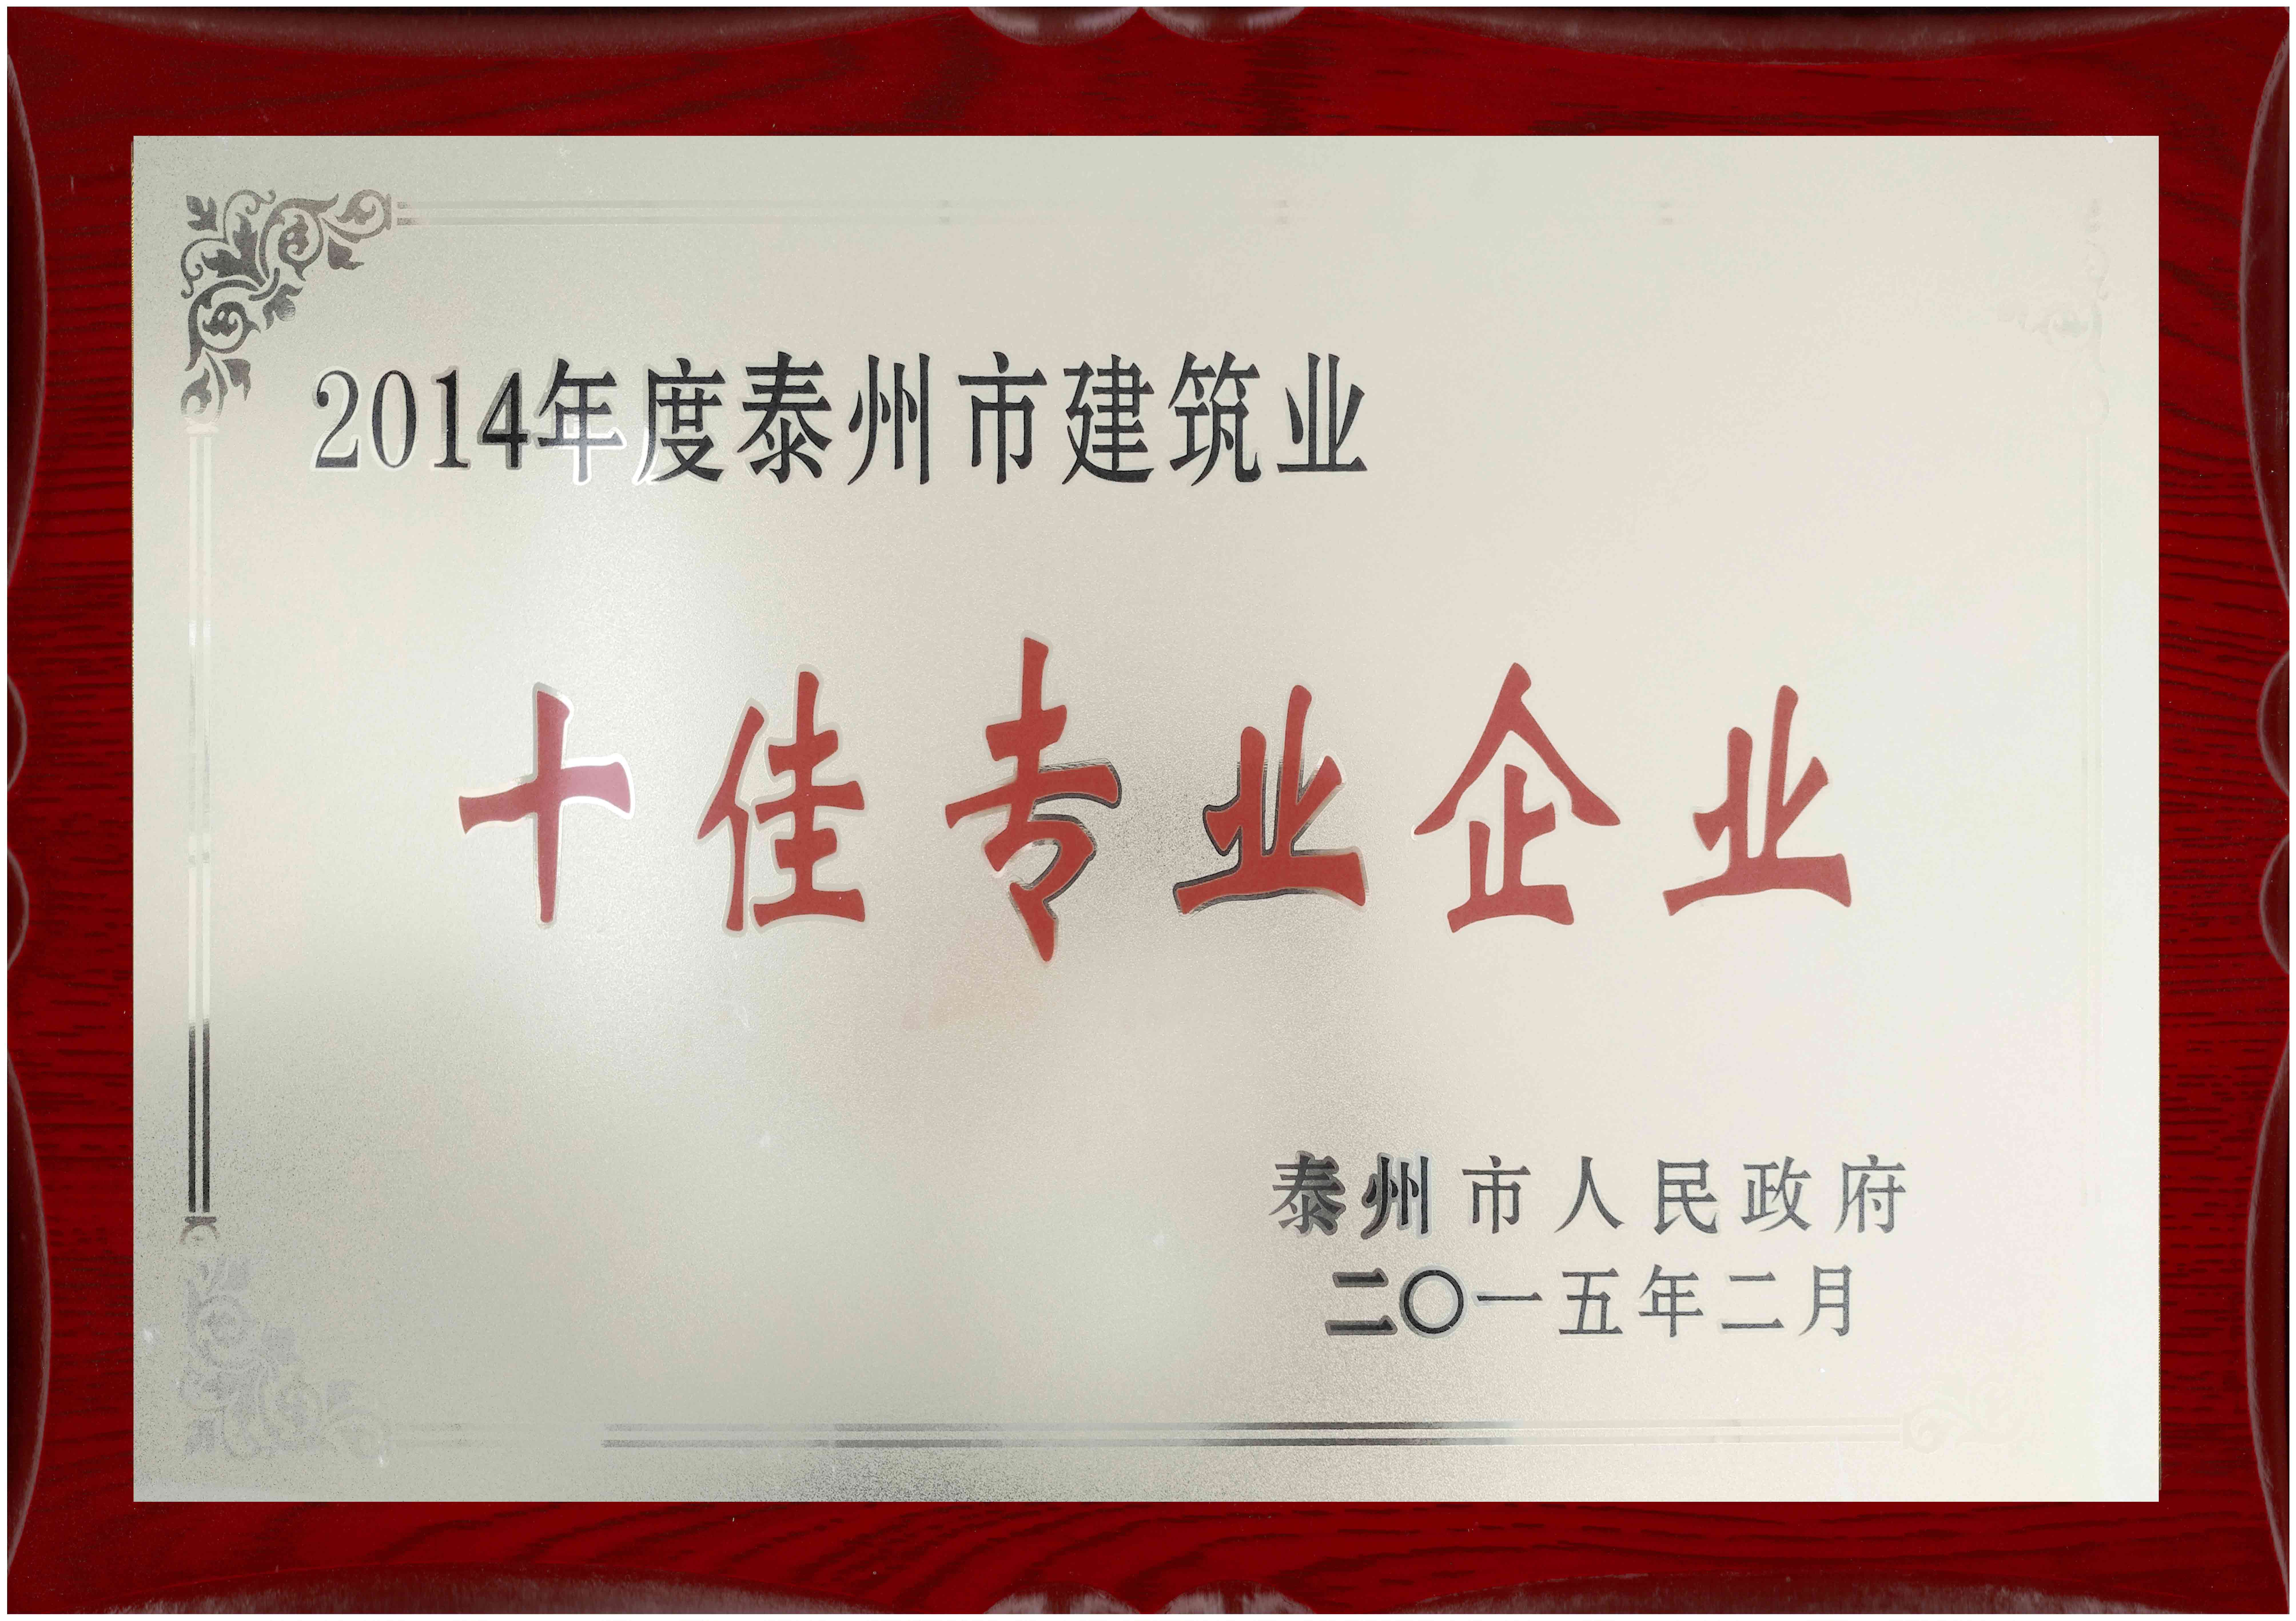 2015年 江苏省泰州市人民政府颁发的“十佳专业企业”企业荣誉奖牌